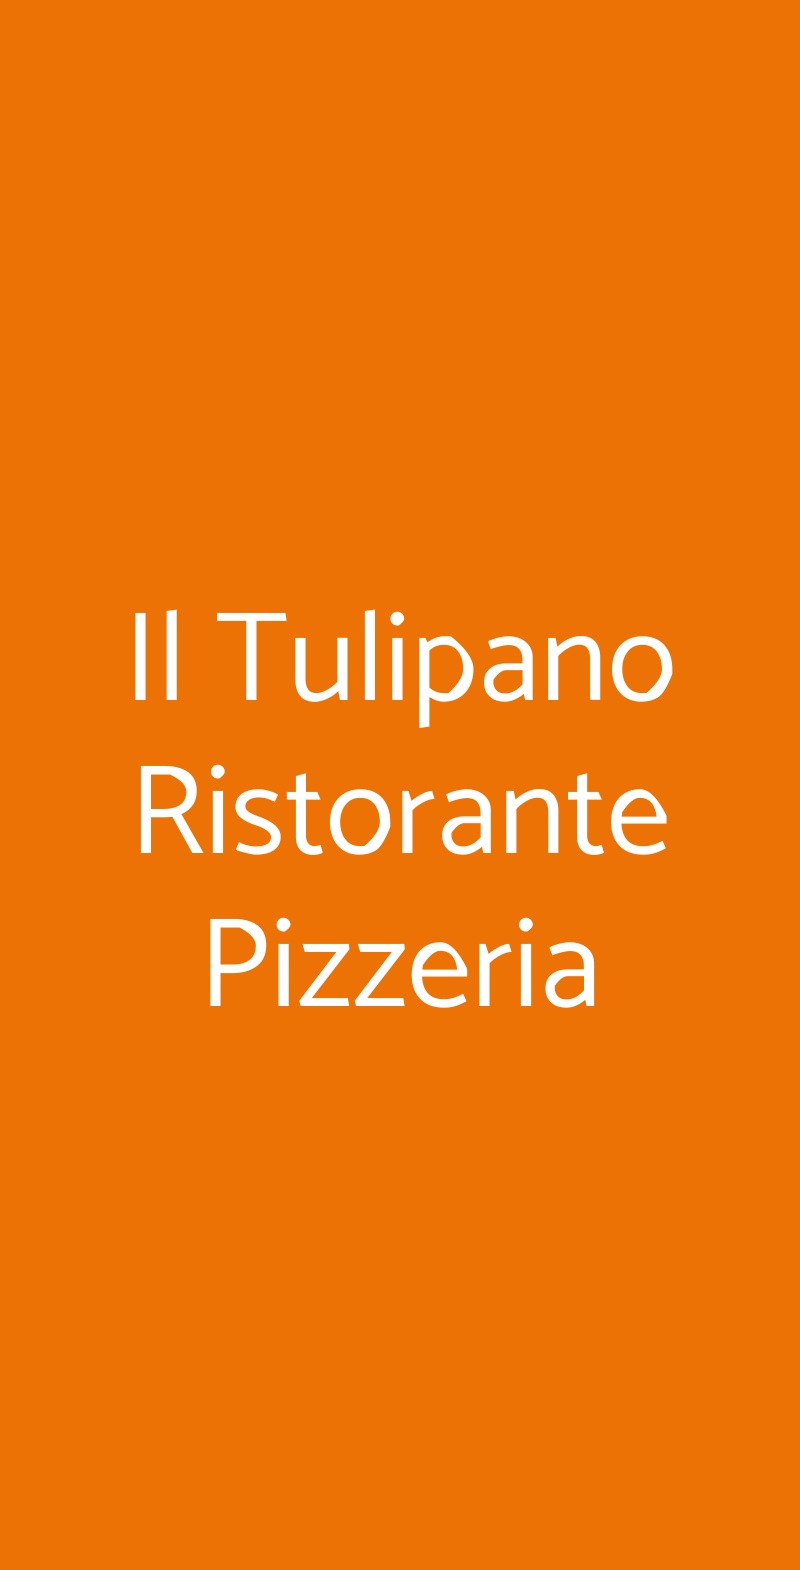 Il Tulipano Ristorante Pizzeria Carpi menù 1 pagina